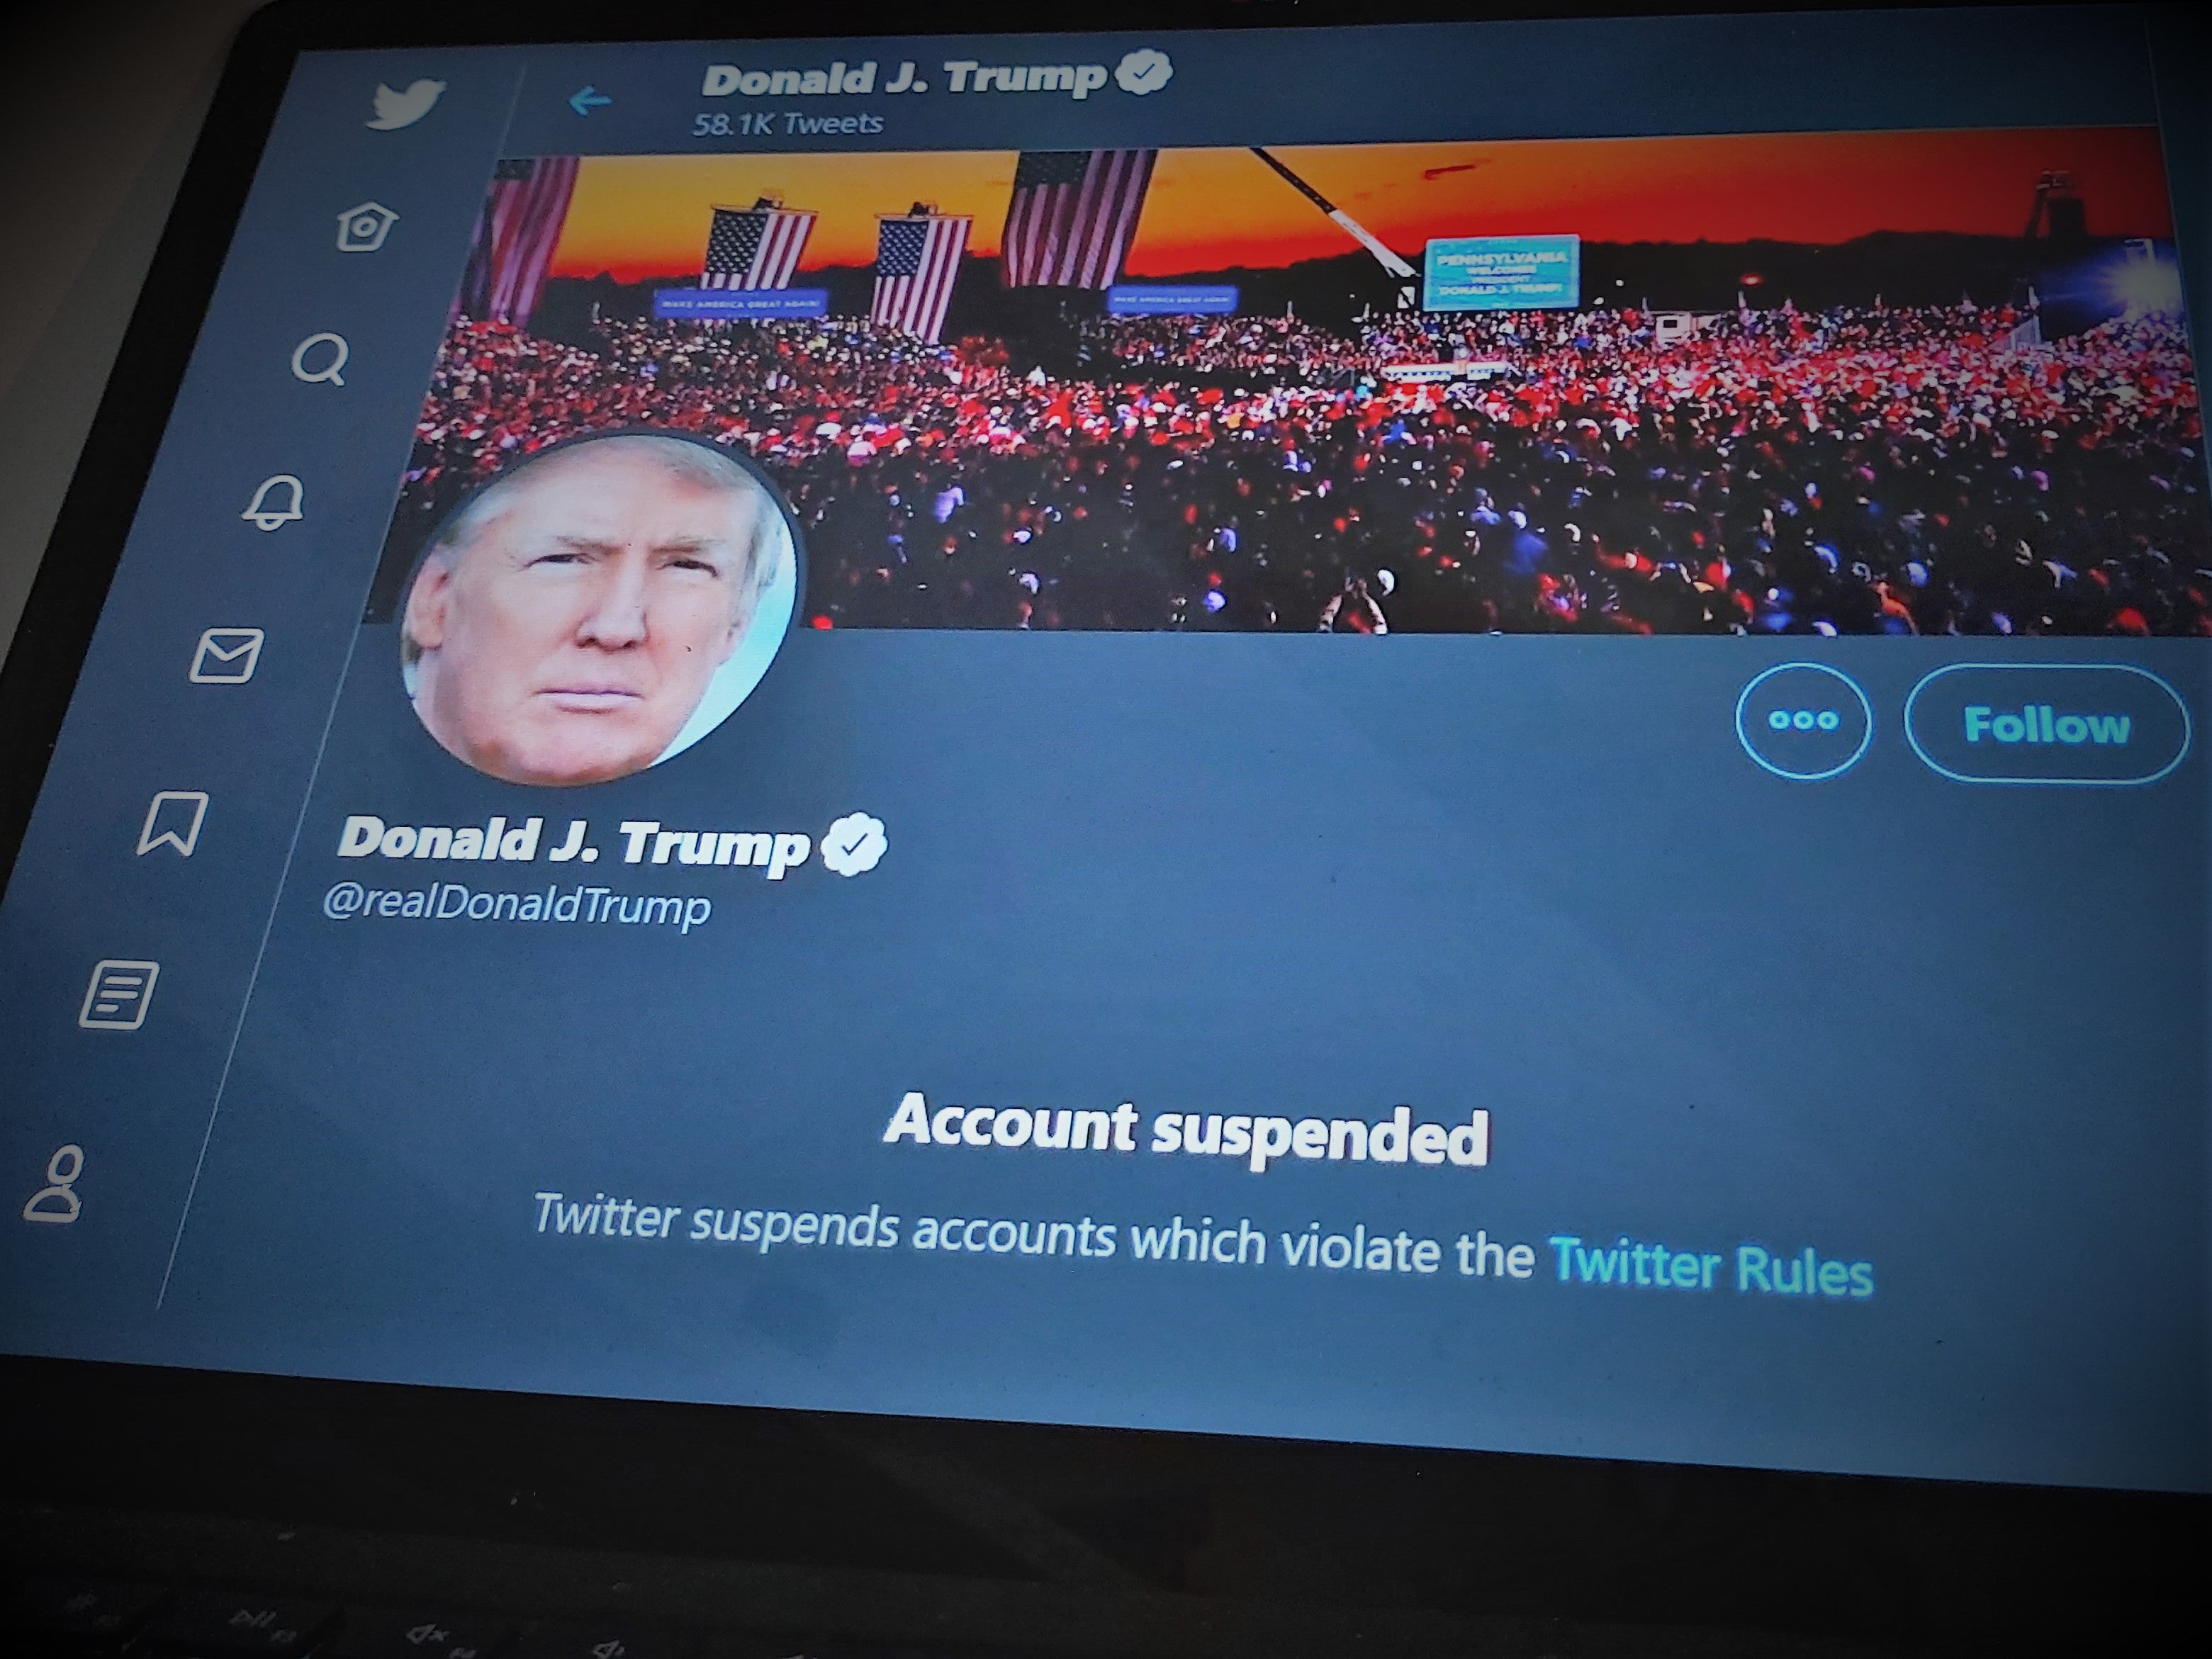 La cuenta de Twitter de Donald Trump podría suspenderse después de que deje el cargo, como muestra esta maqueta